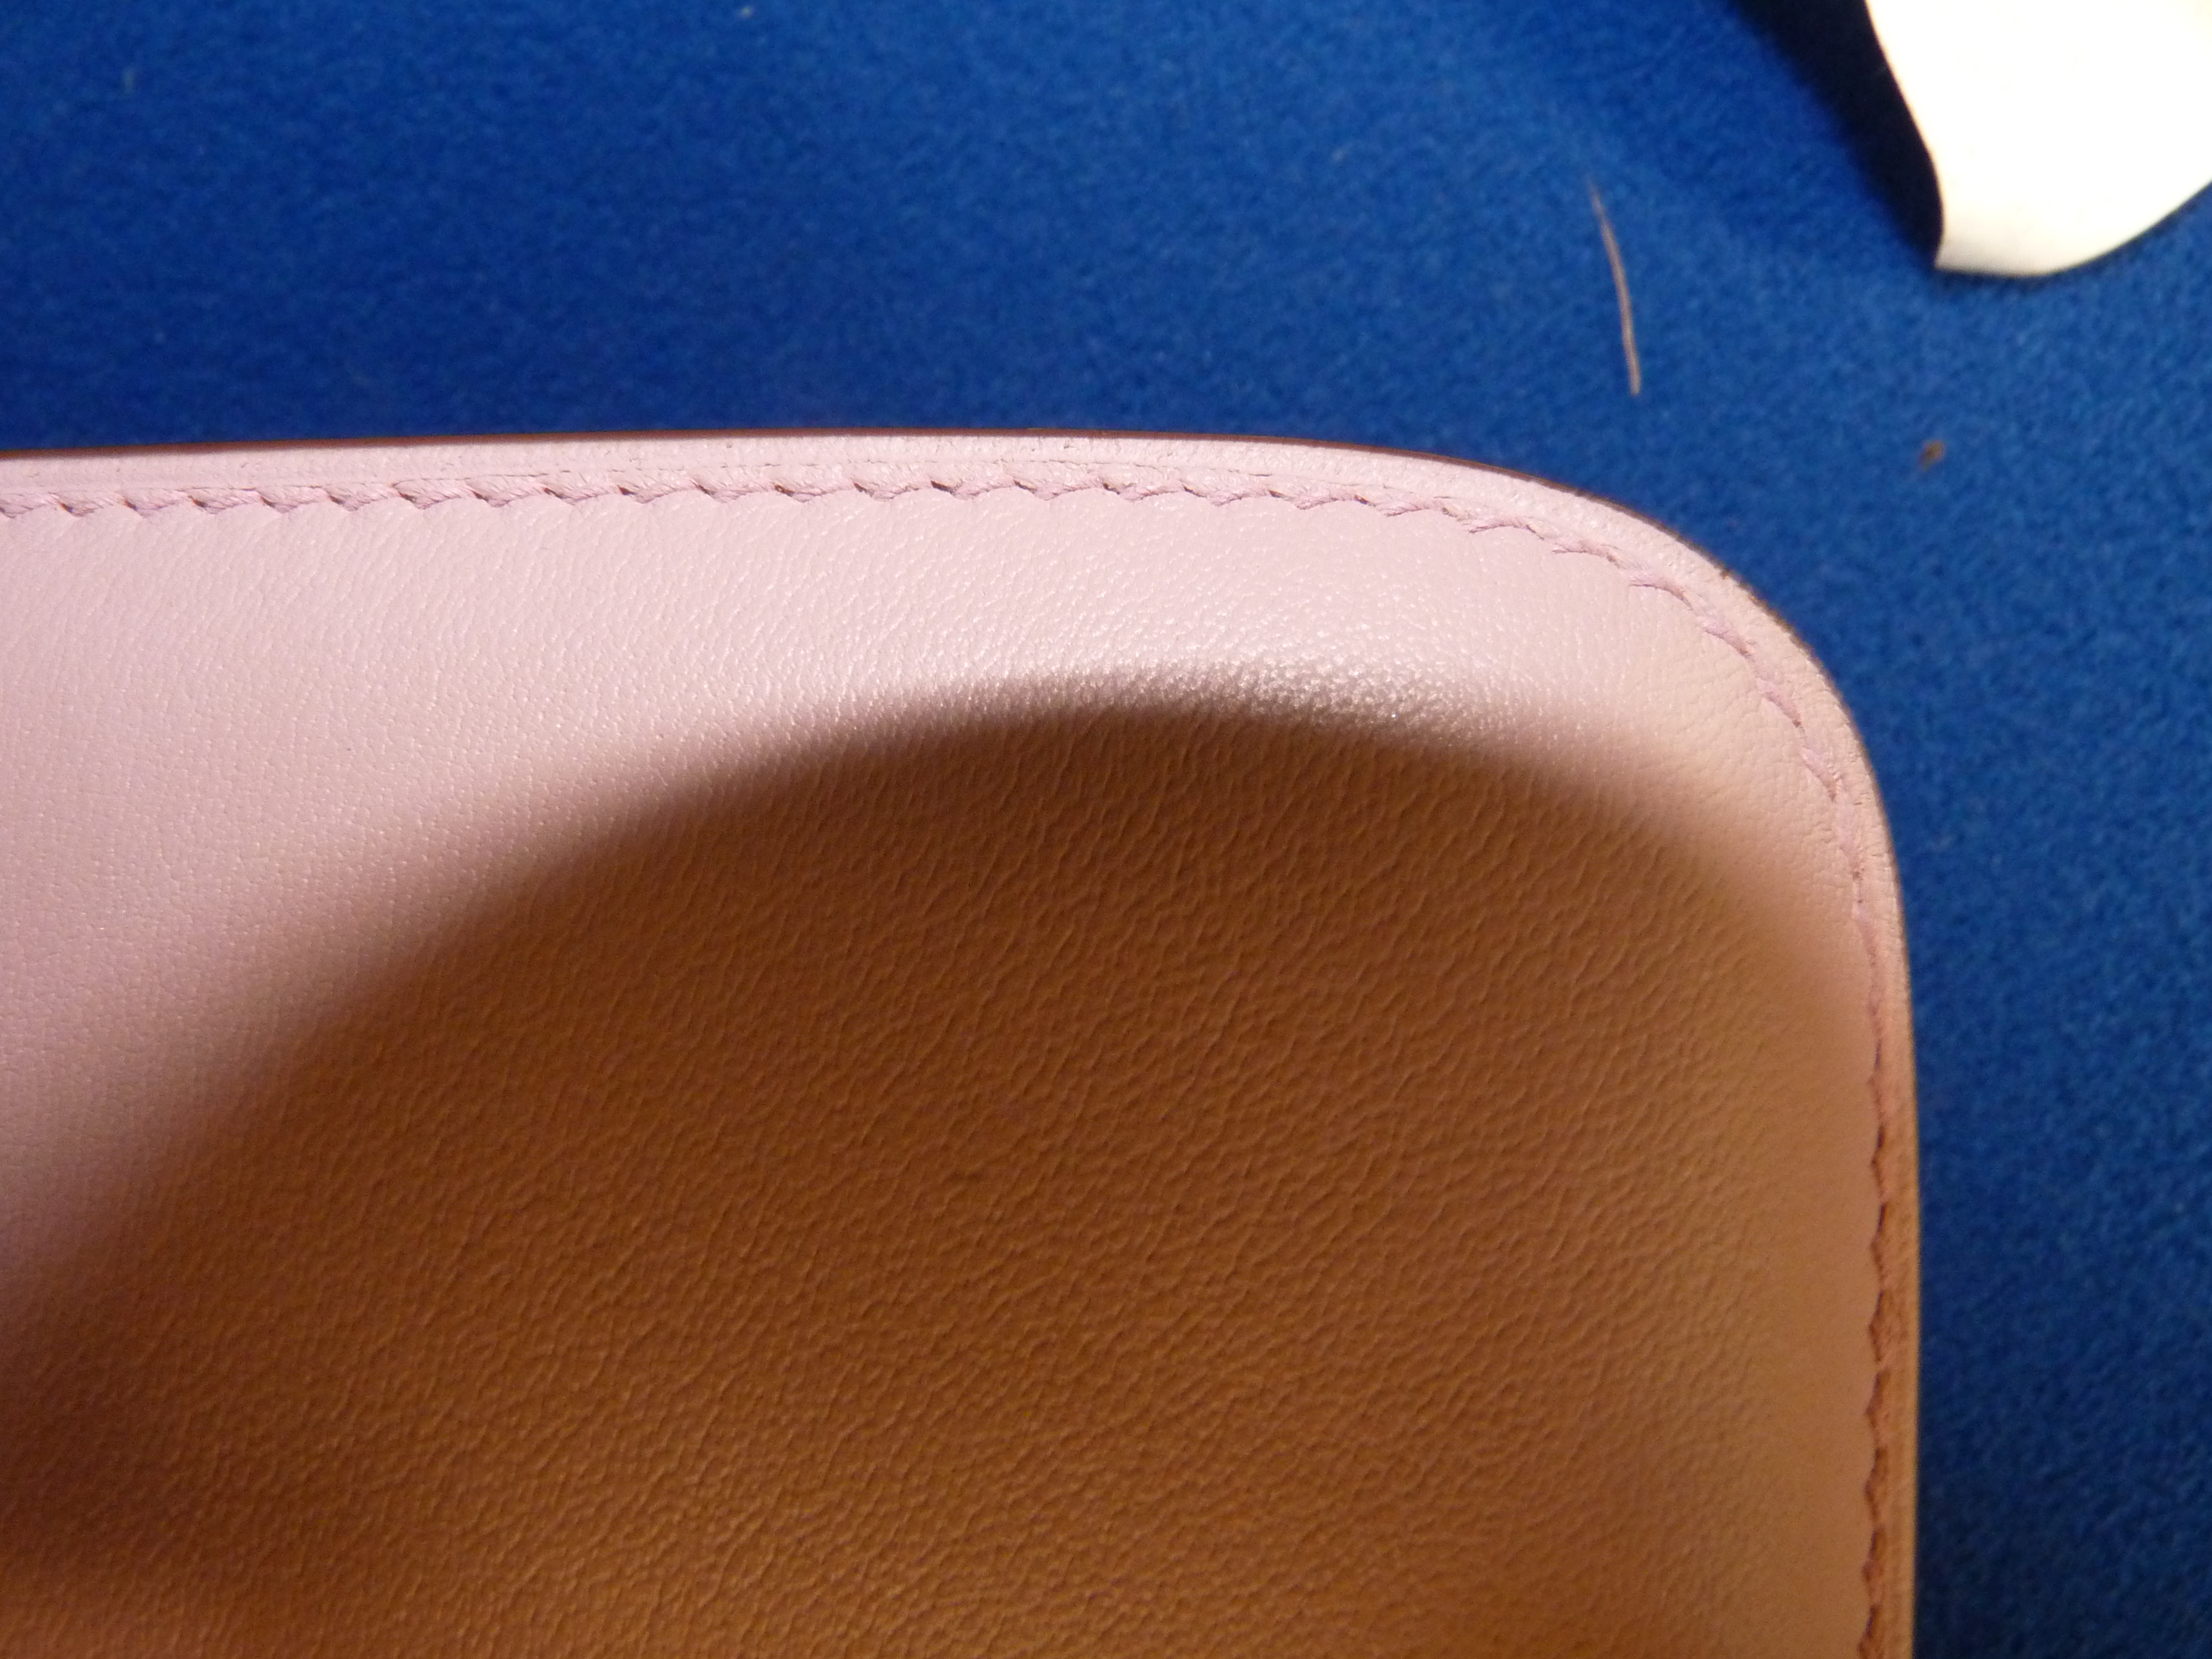 Boxed Hermes Pink Ladies Handbag - Image 2 of 14